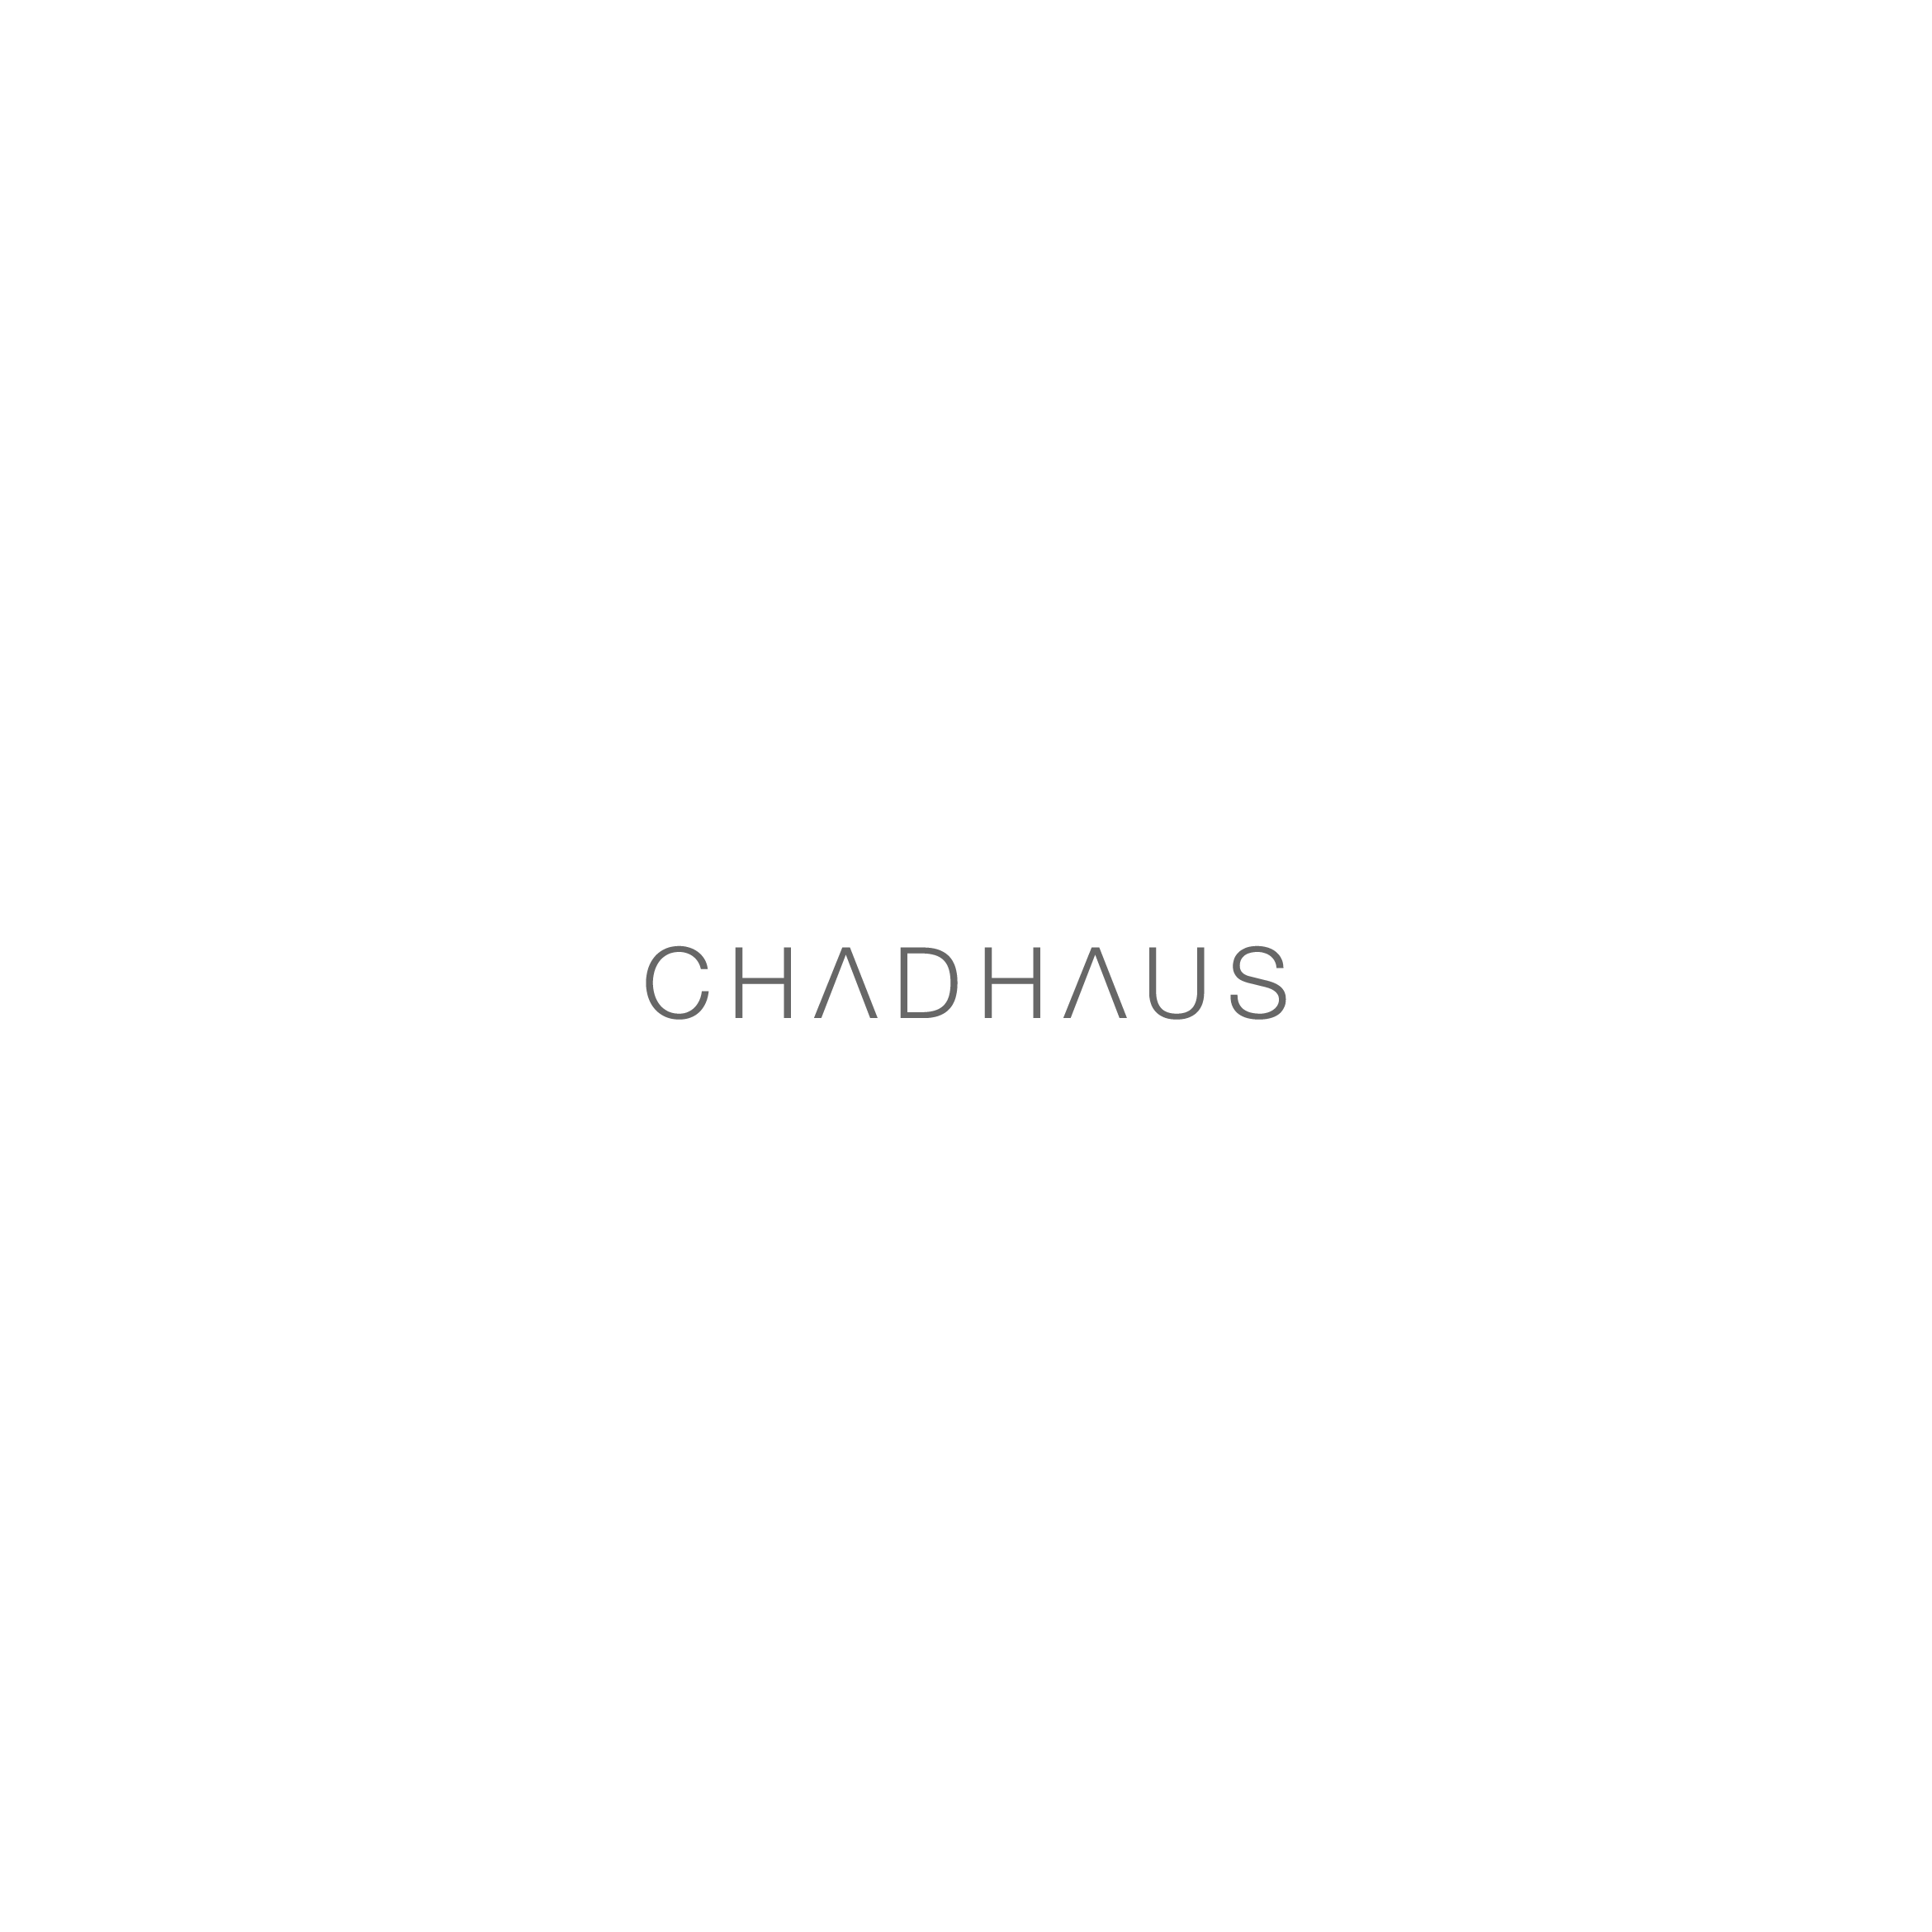 chadhaus_raykovich_identity_01